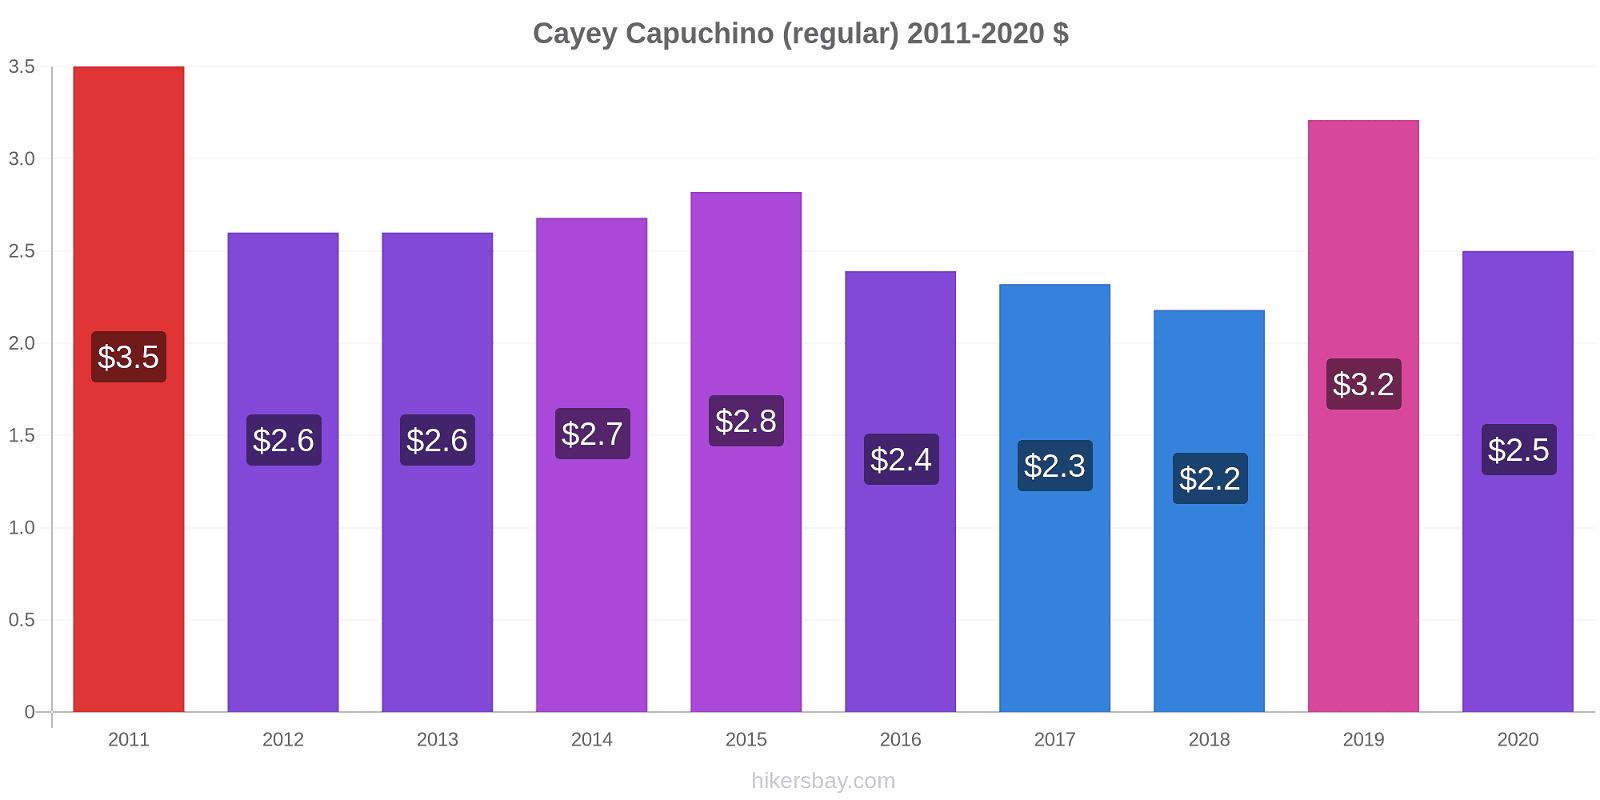 Cayey cambios de precios Capuchino (regular) hikersbay.com